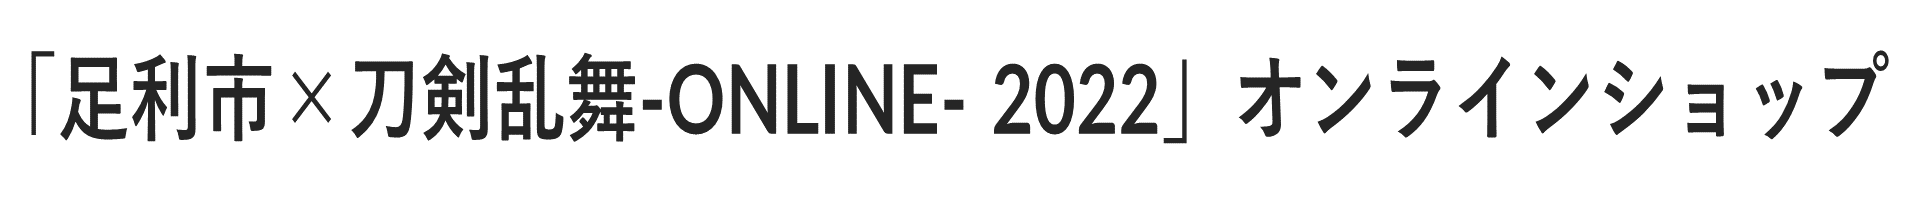 「足利市×刀剣乱舞-ONLINE- 2022」オンラインショップ